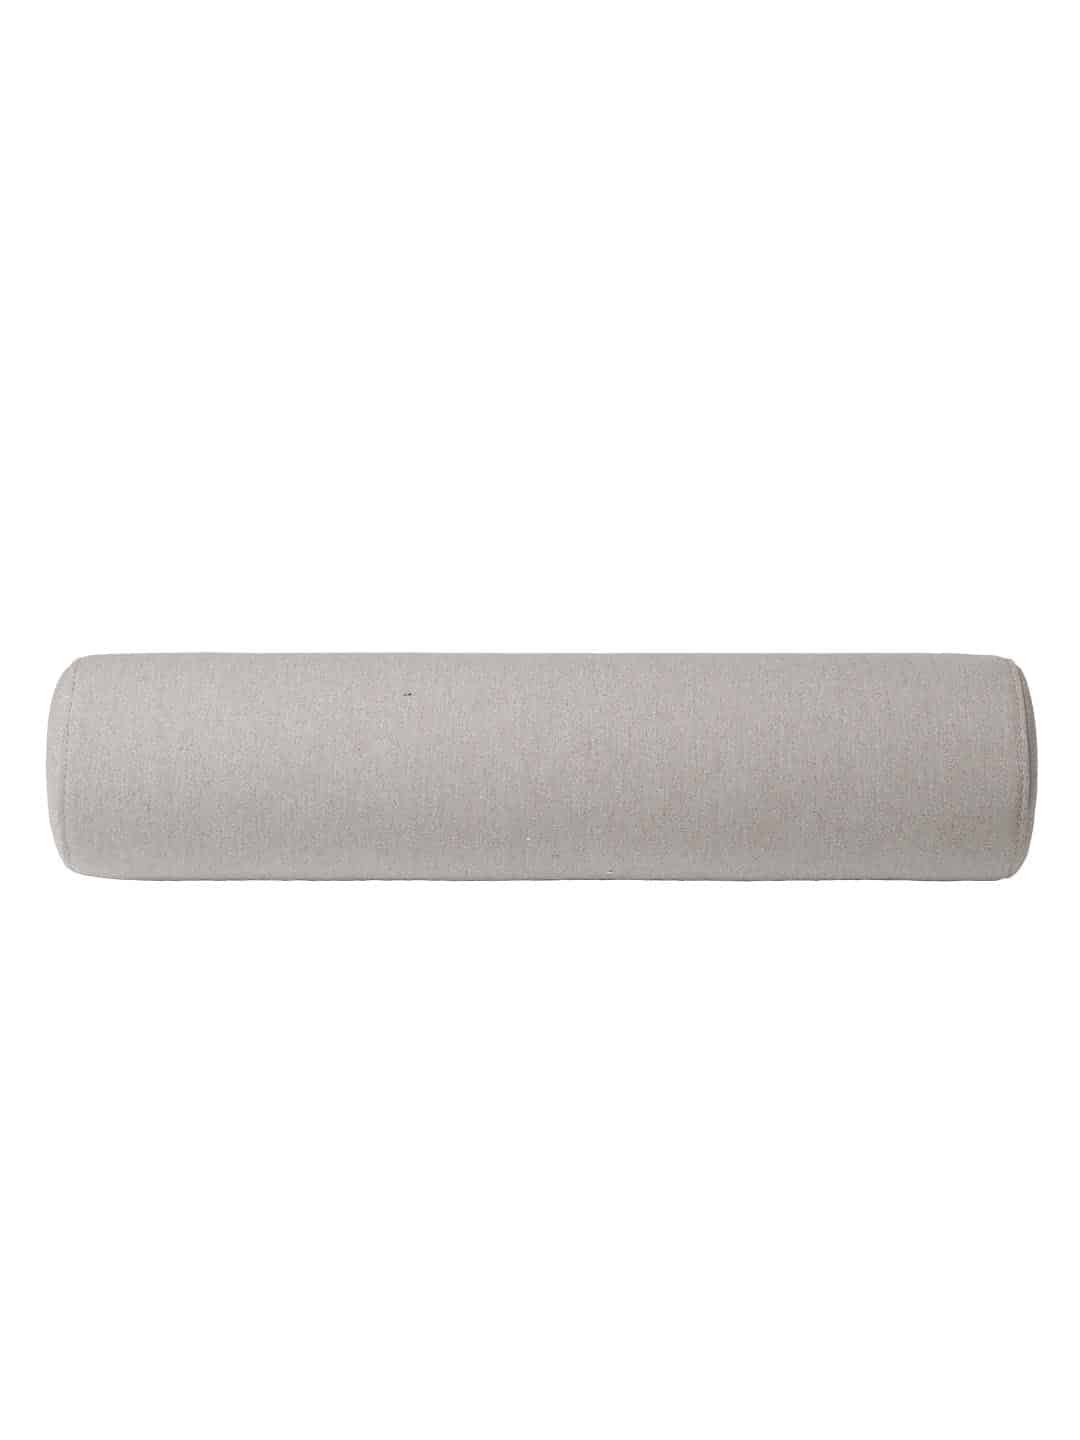 Стильная декоративная подушка Kristina Dam Minimal Daybed серого цвета